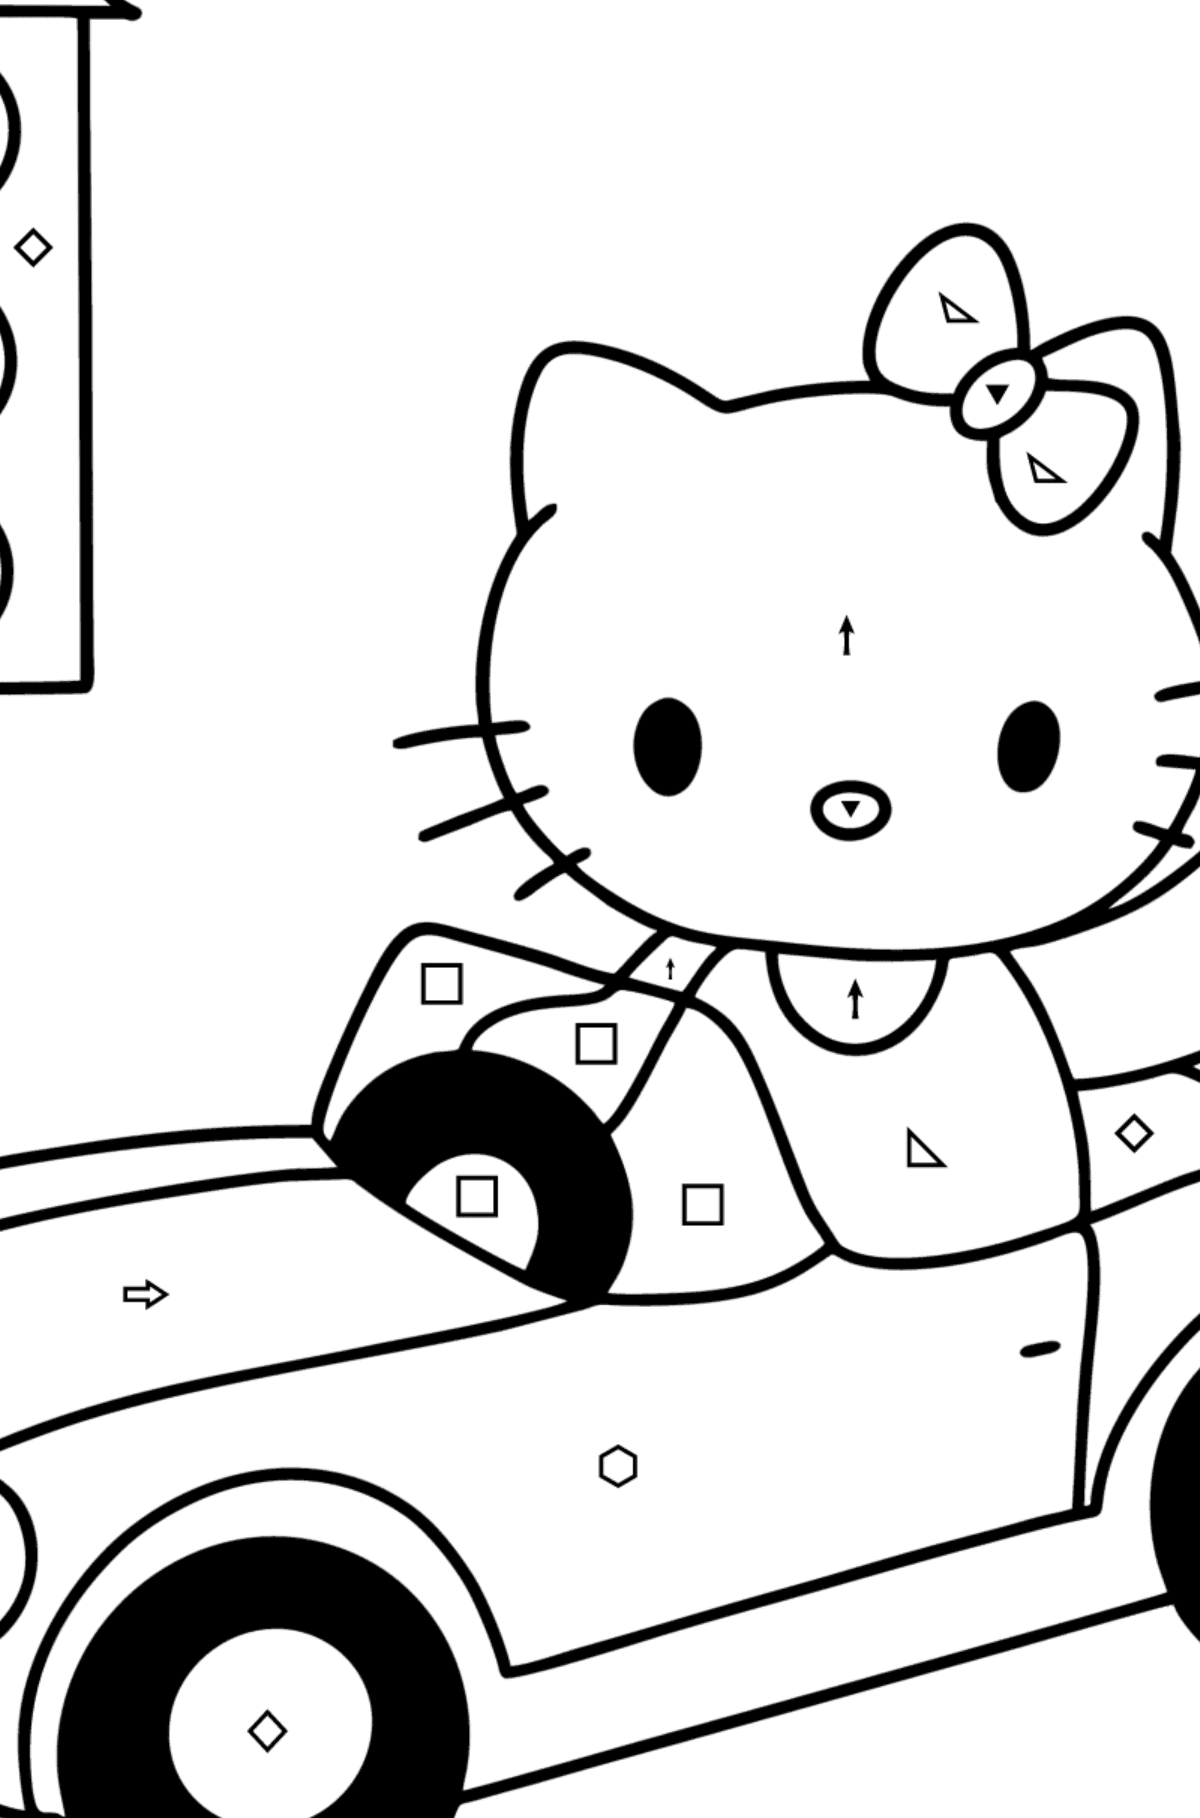 Tegning til fargelegging Hello Kitty og bil - Fargelegge etter symboler og geometriske former for barn